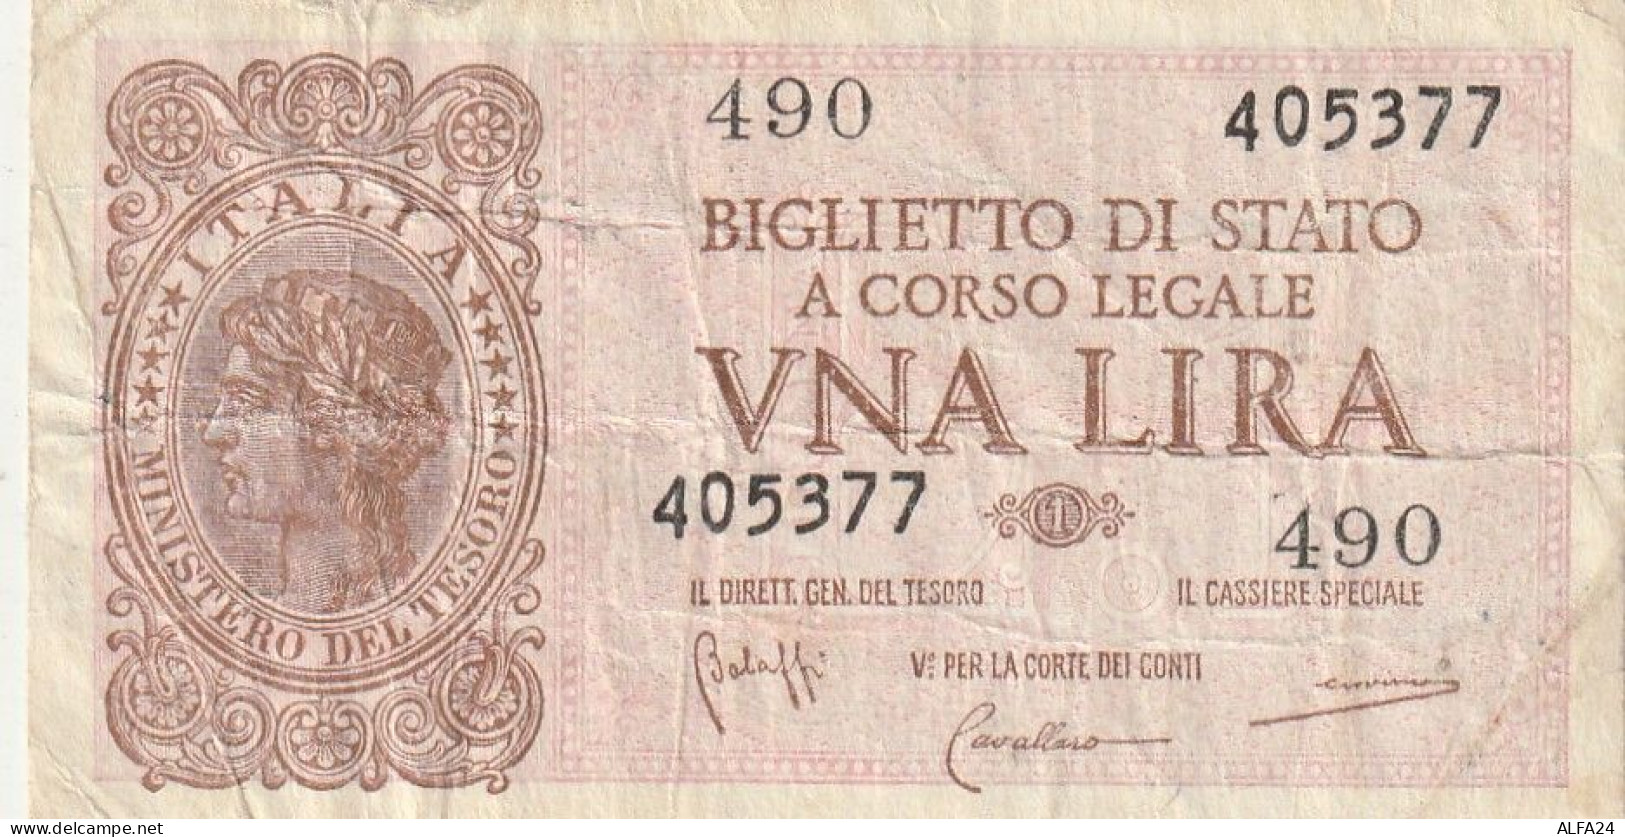 BANCONOTA BIGLIETTO DI STATO ITALIA 1 LIRA VF  (B_351 - Italia – 1 Lira